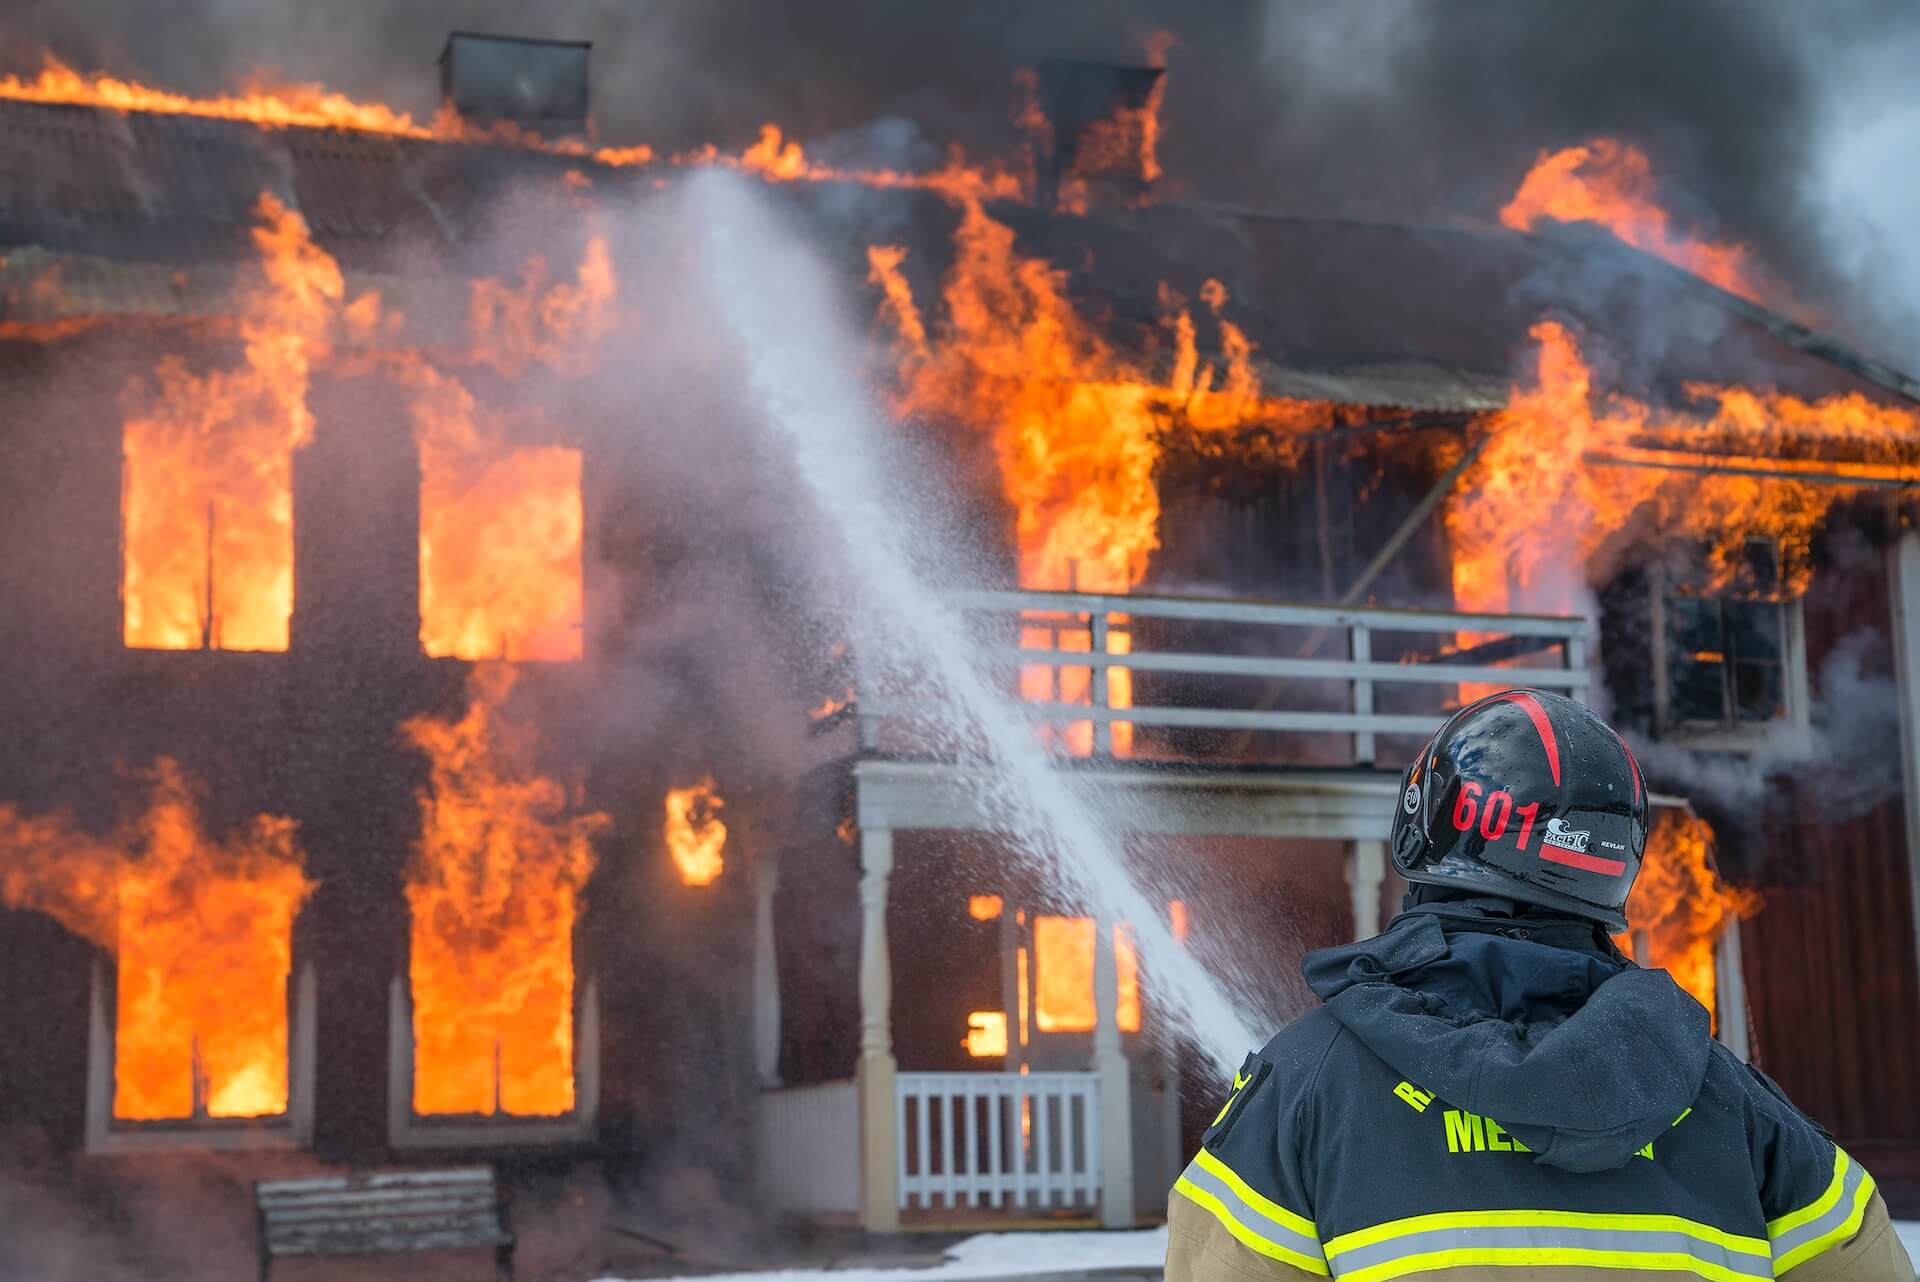 بیمه آتش سوزی چیست و چطور آن را تهیه کنیم؟